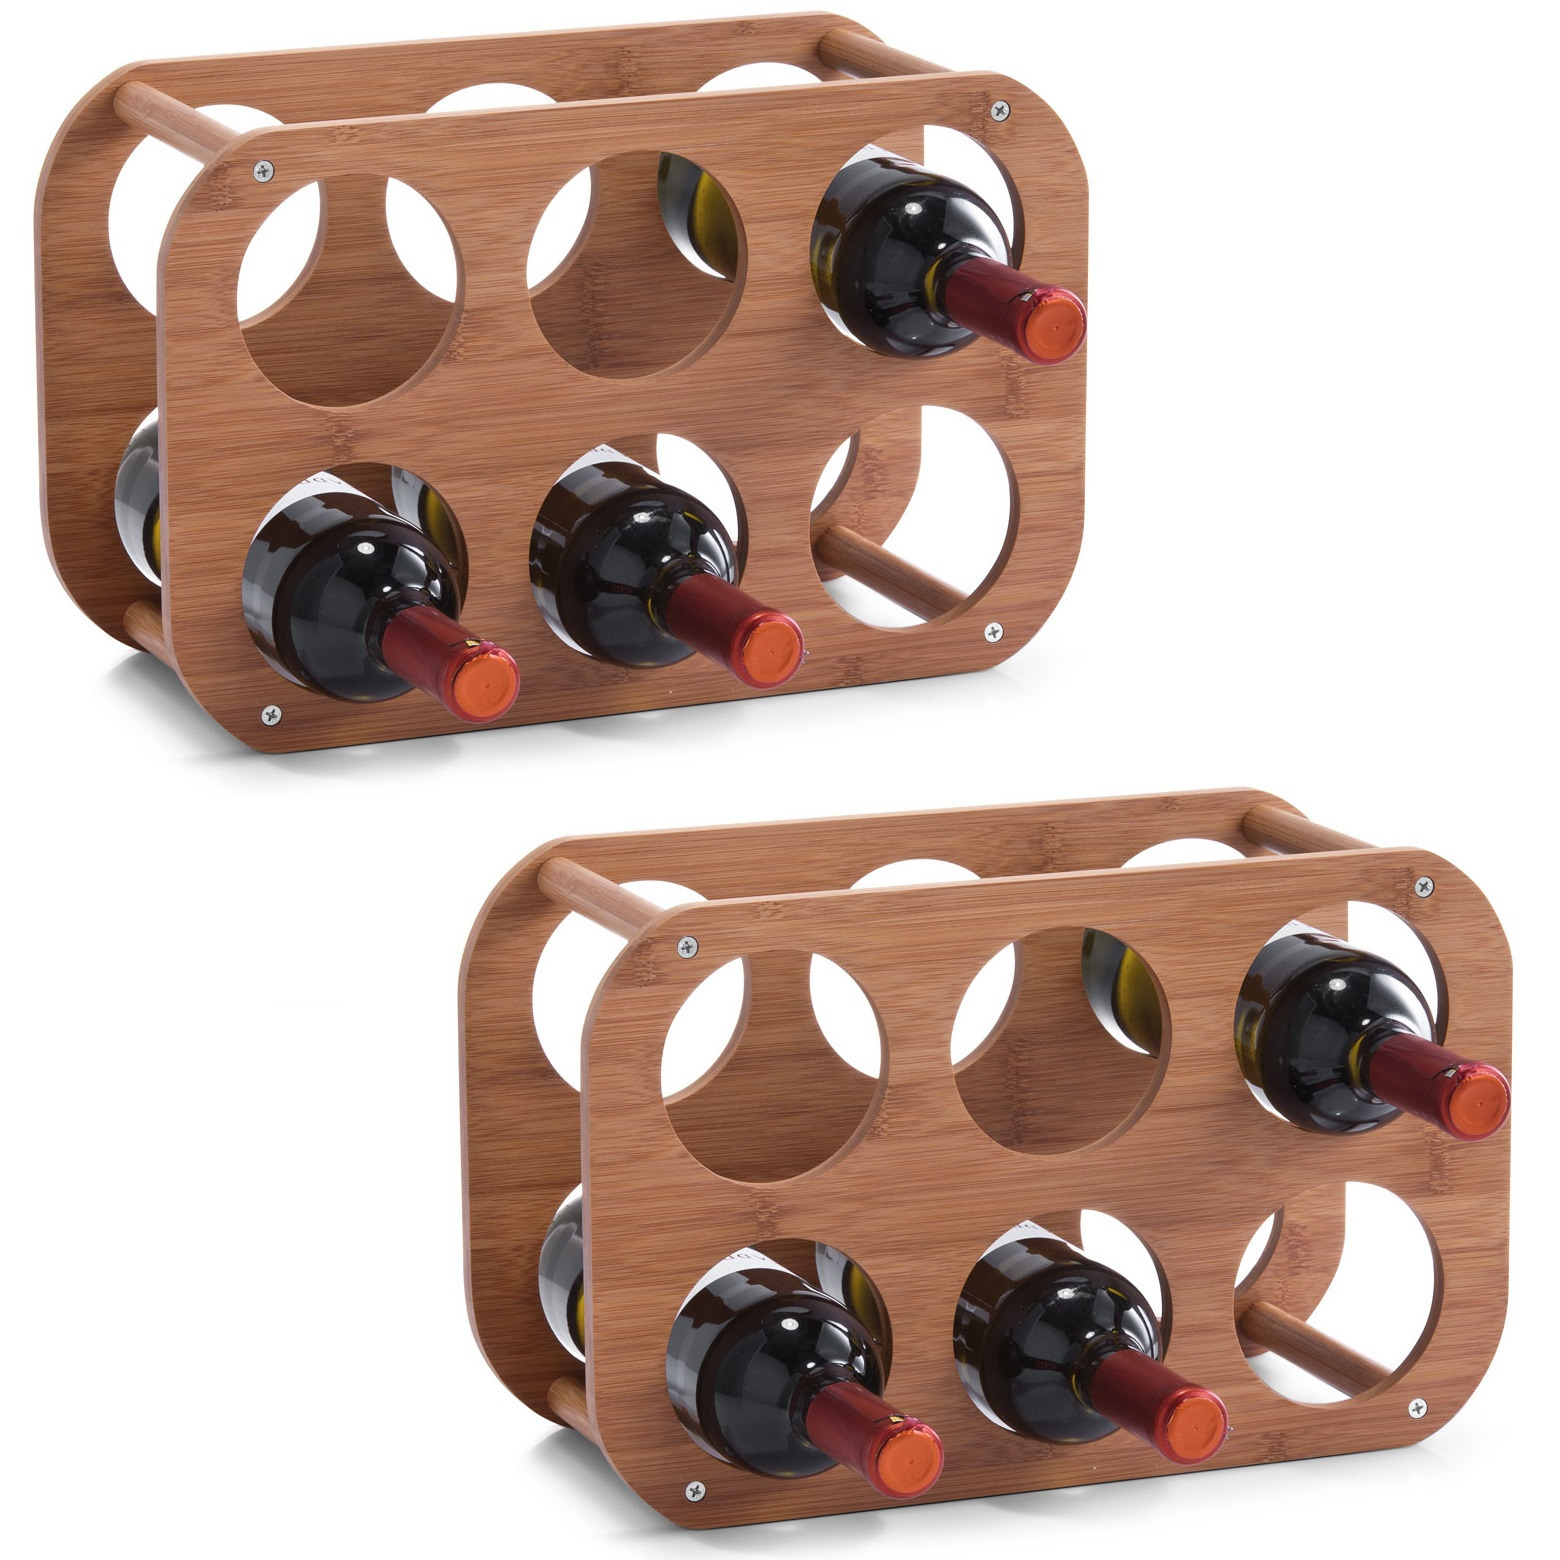 2x Houten wijnflessen rekken-wijnrekken compact voor 6 flessen 38 cm